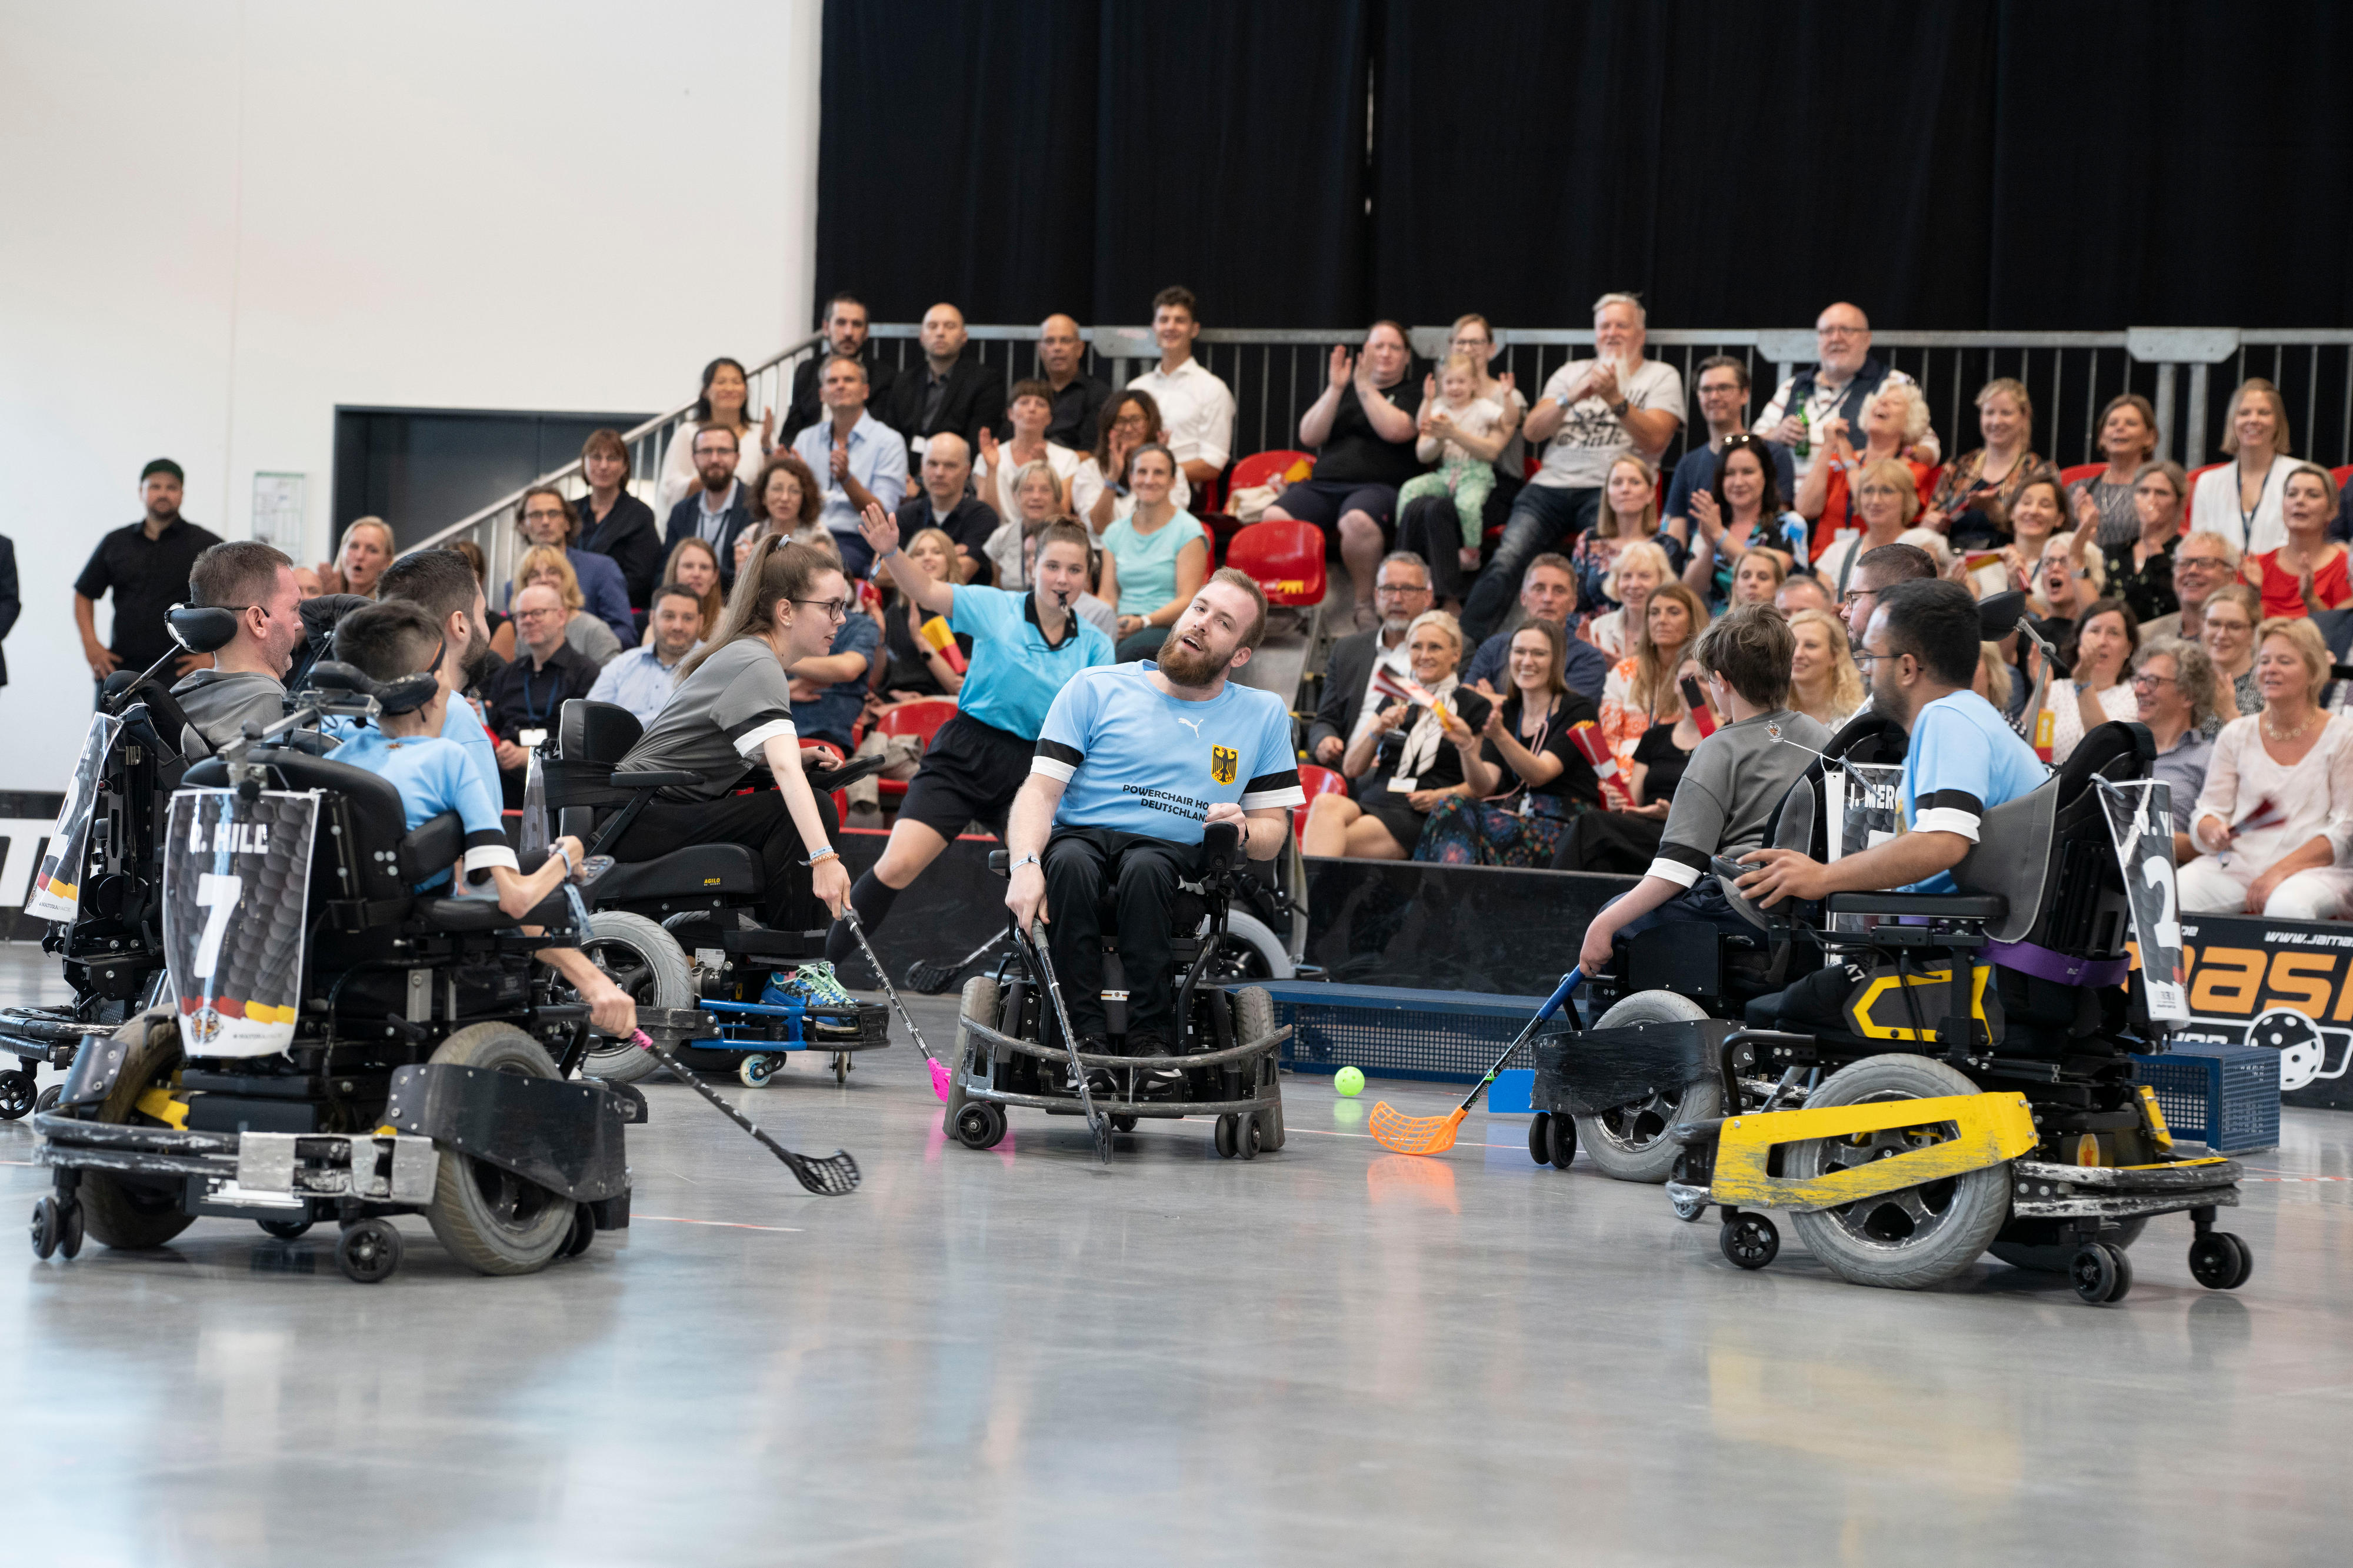 Hockey-Spielerinnen und -Spieler in elektrischen Rollstühlen in einer Sporthalle, im Hintergrund applaudiert das Publikum.